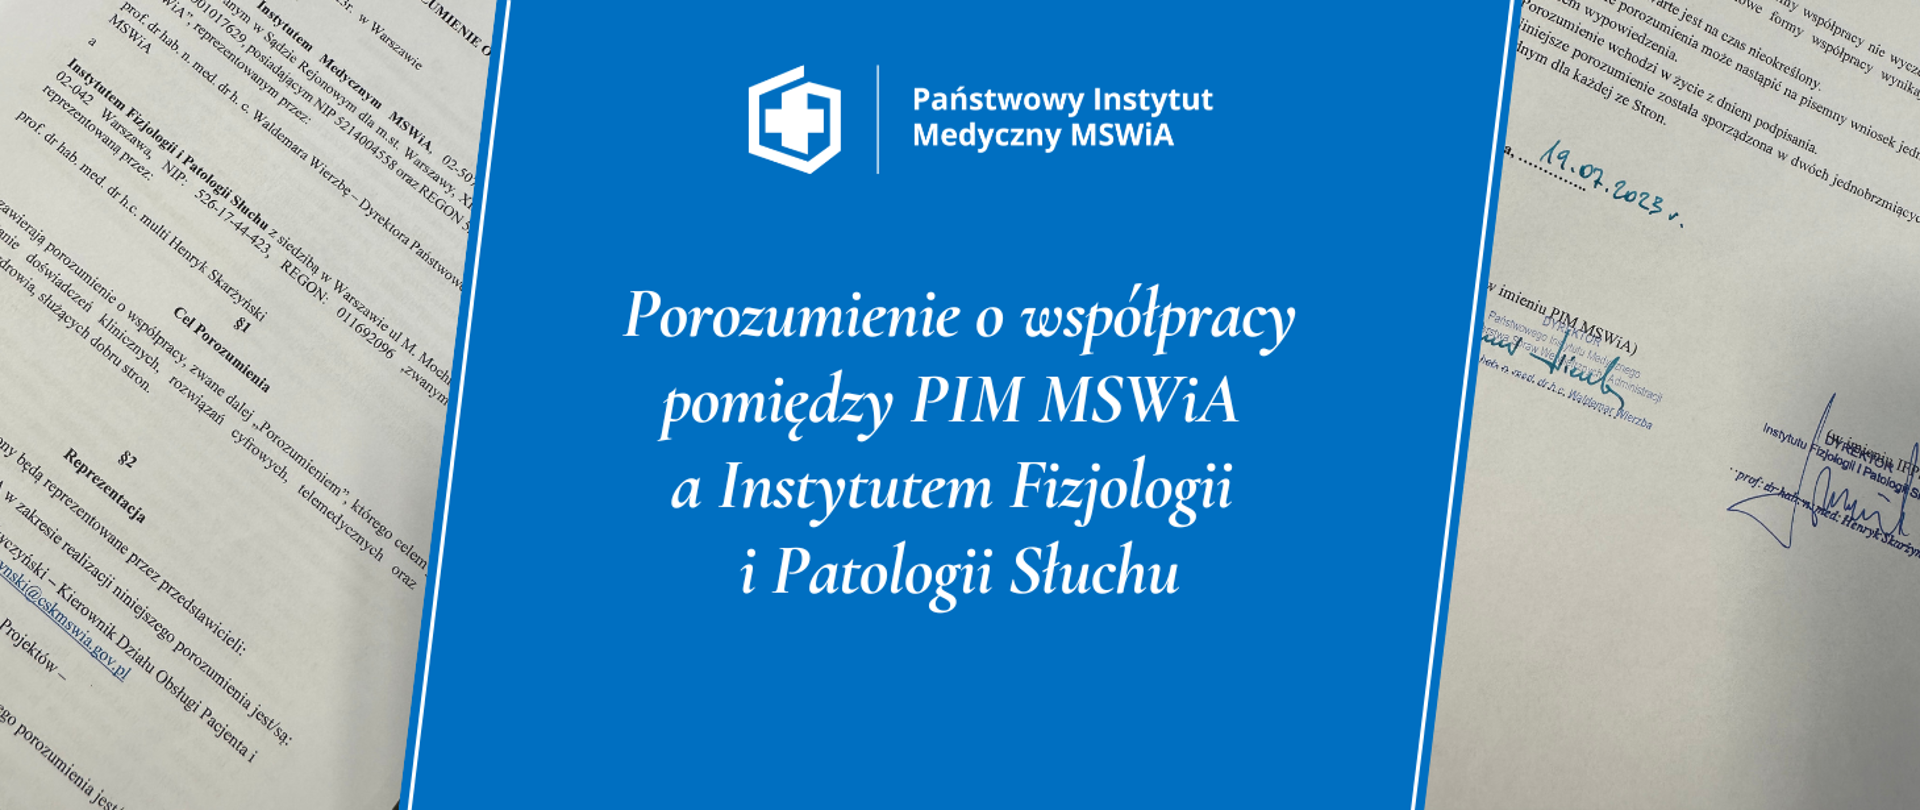 Porozumienie o współpracy pomiędzy PIM MSWiA a Instytutem Fizjologii i Patologii Słuchu